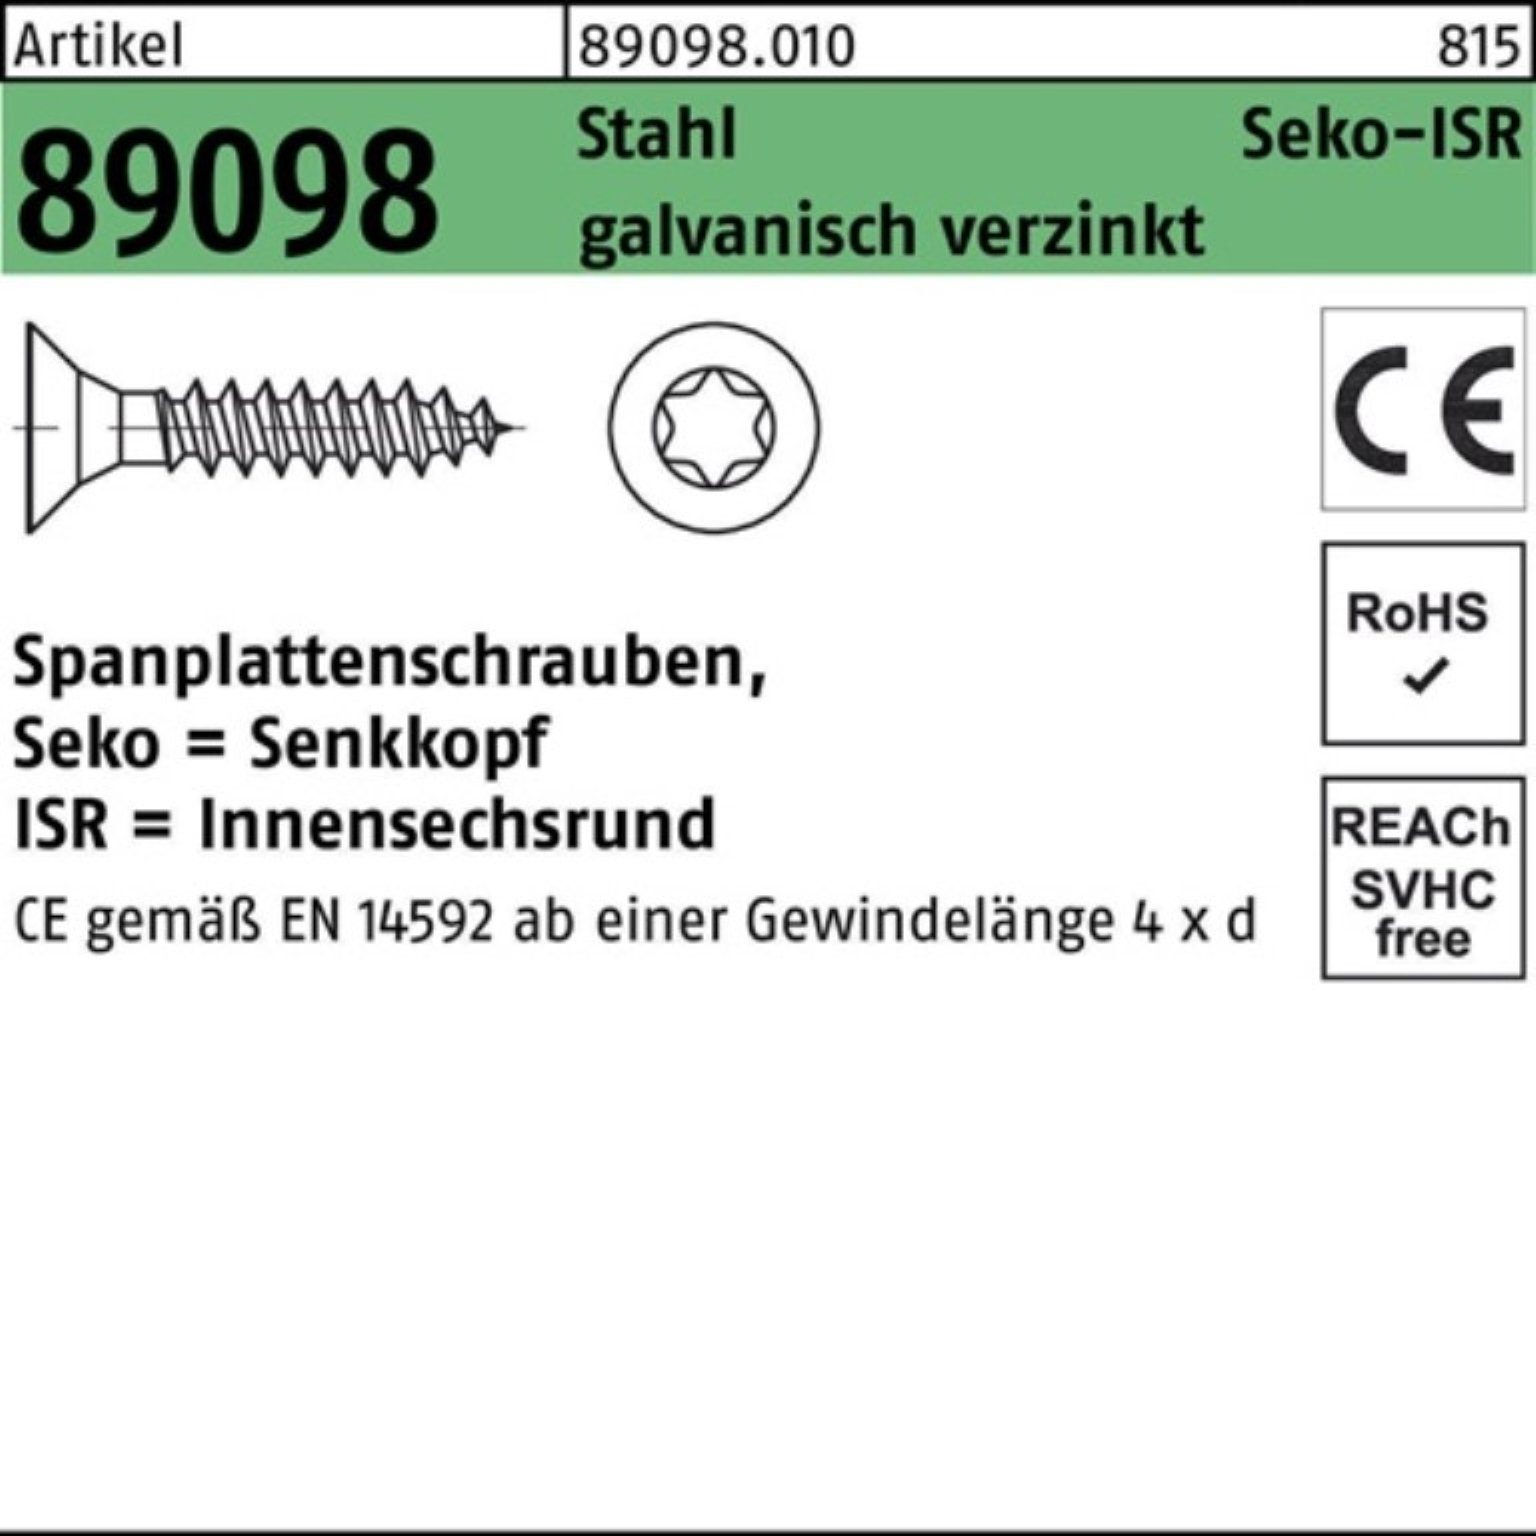 Reyher gal Spanplattenschraube Pack VG ISR Spanplattenschraube 1000er SEKO 4x20-T20 R 89098 Stahl